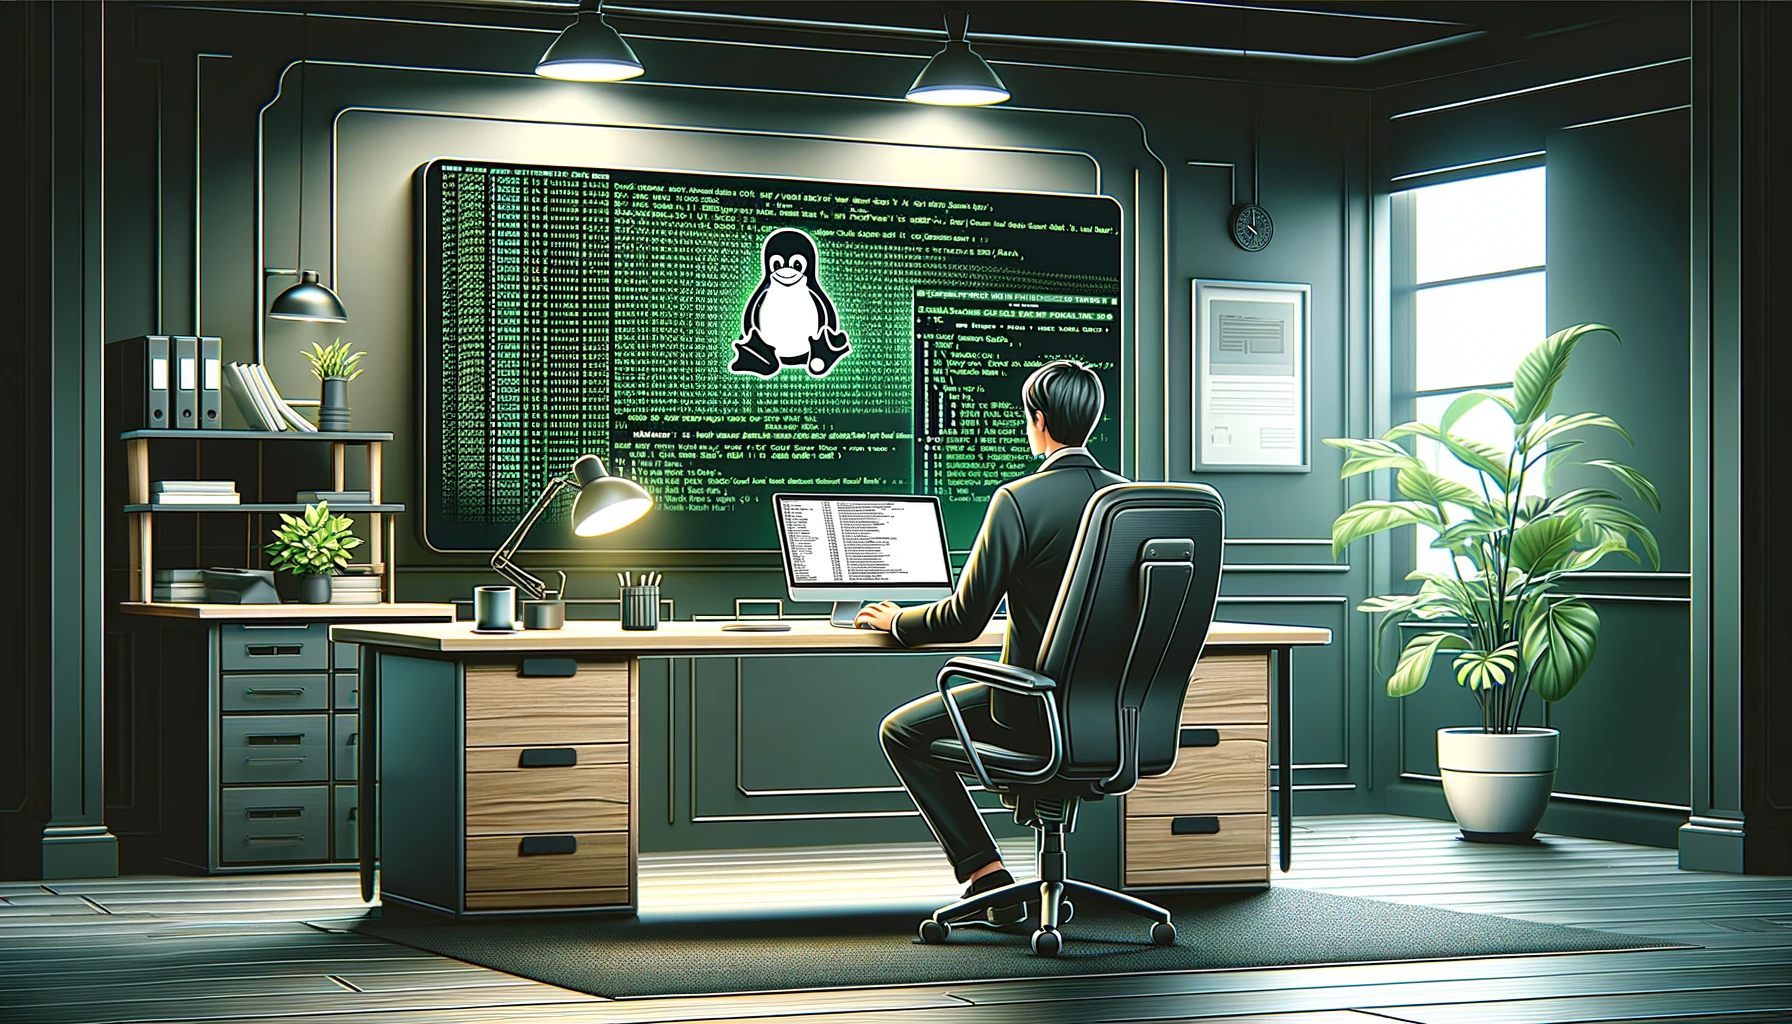 Eine Person sitzt vor einem großen Bildschirm und schaut auf eine Linux CLI